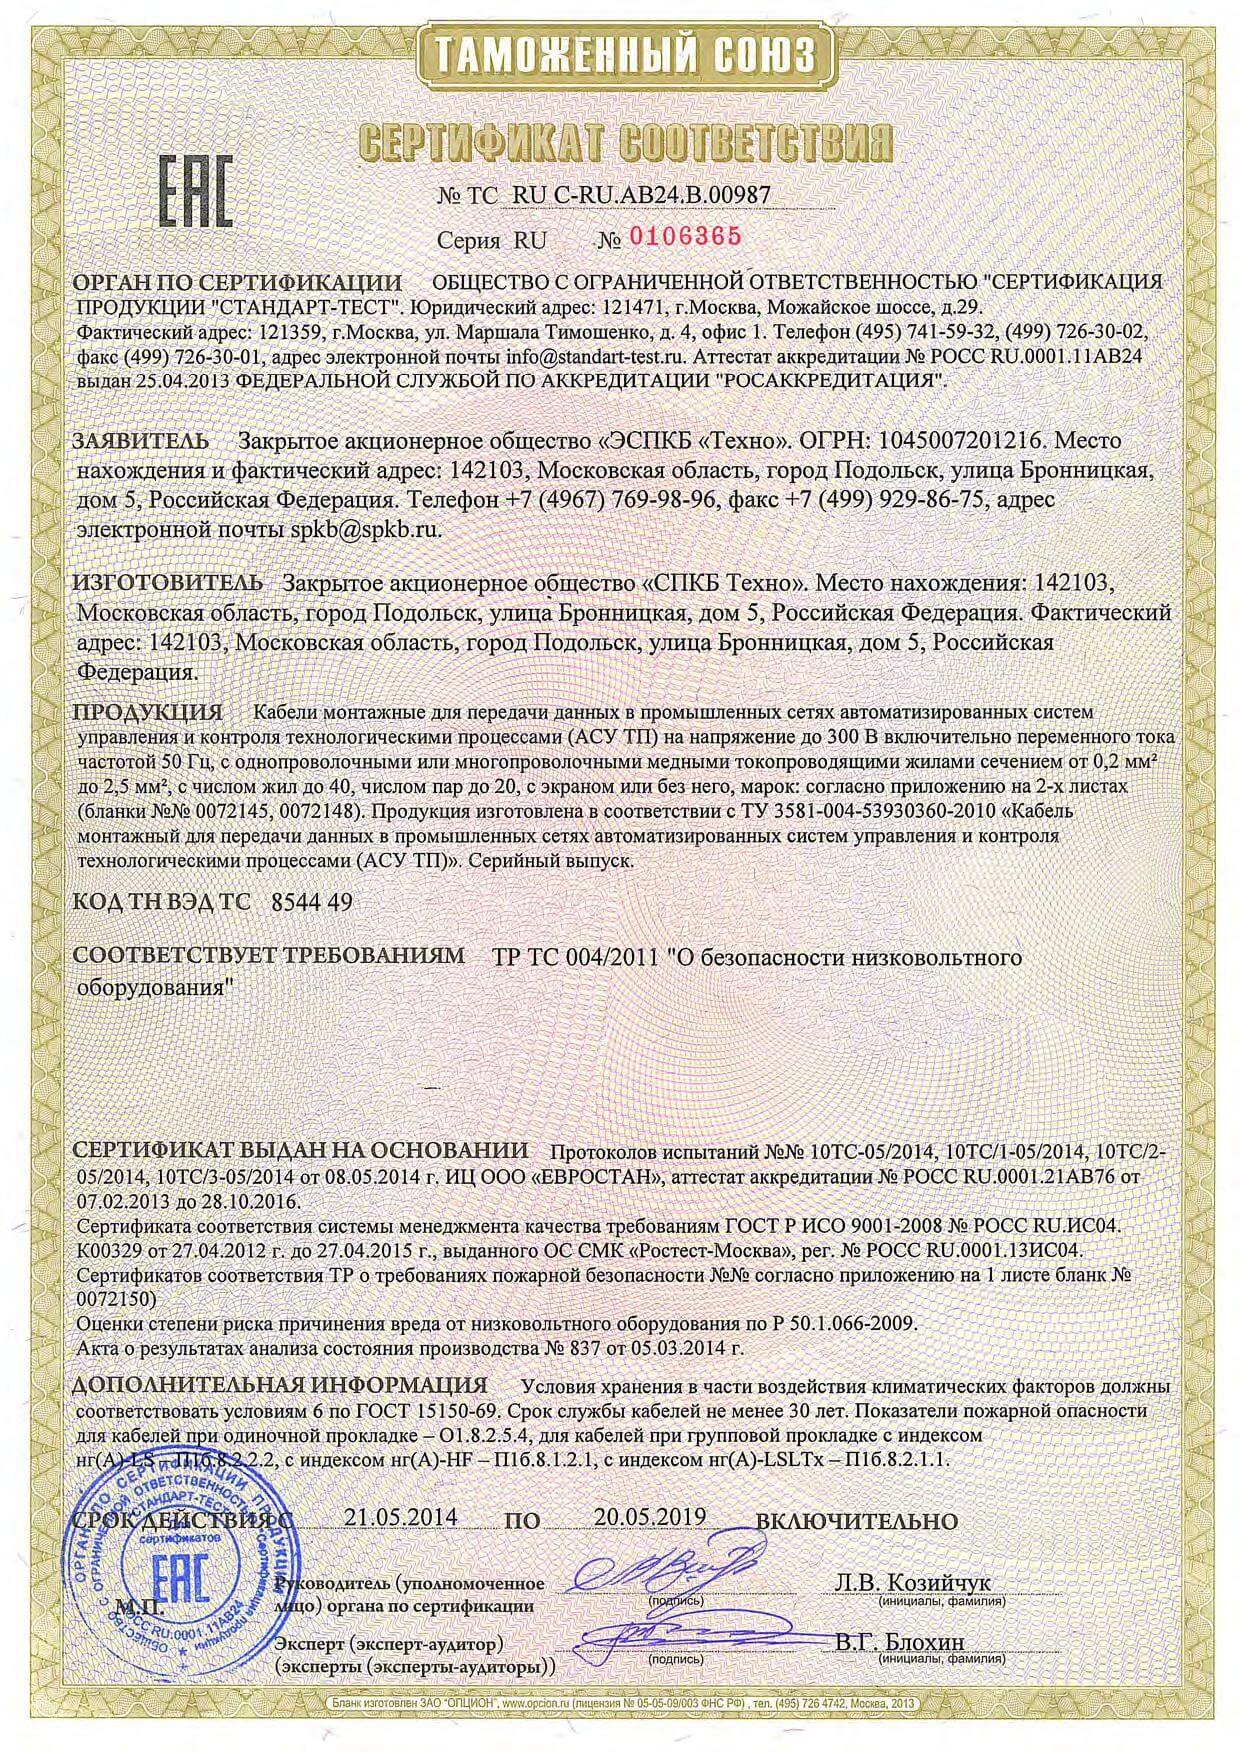 Пример заполненного сертификата